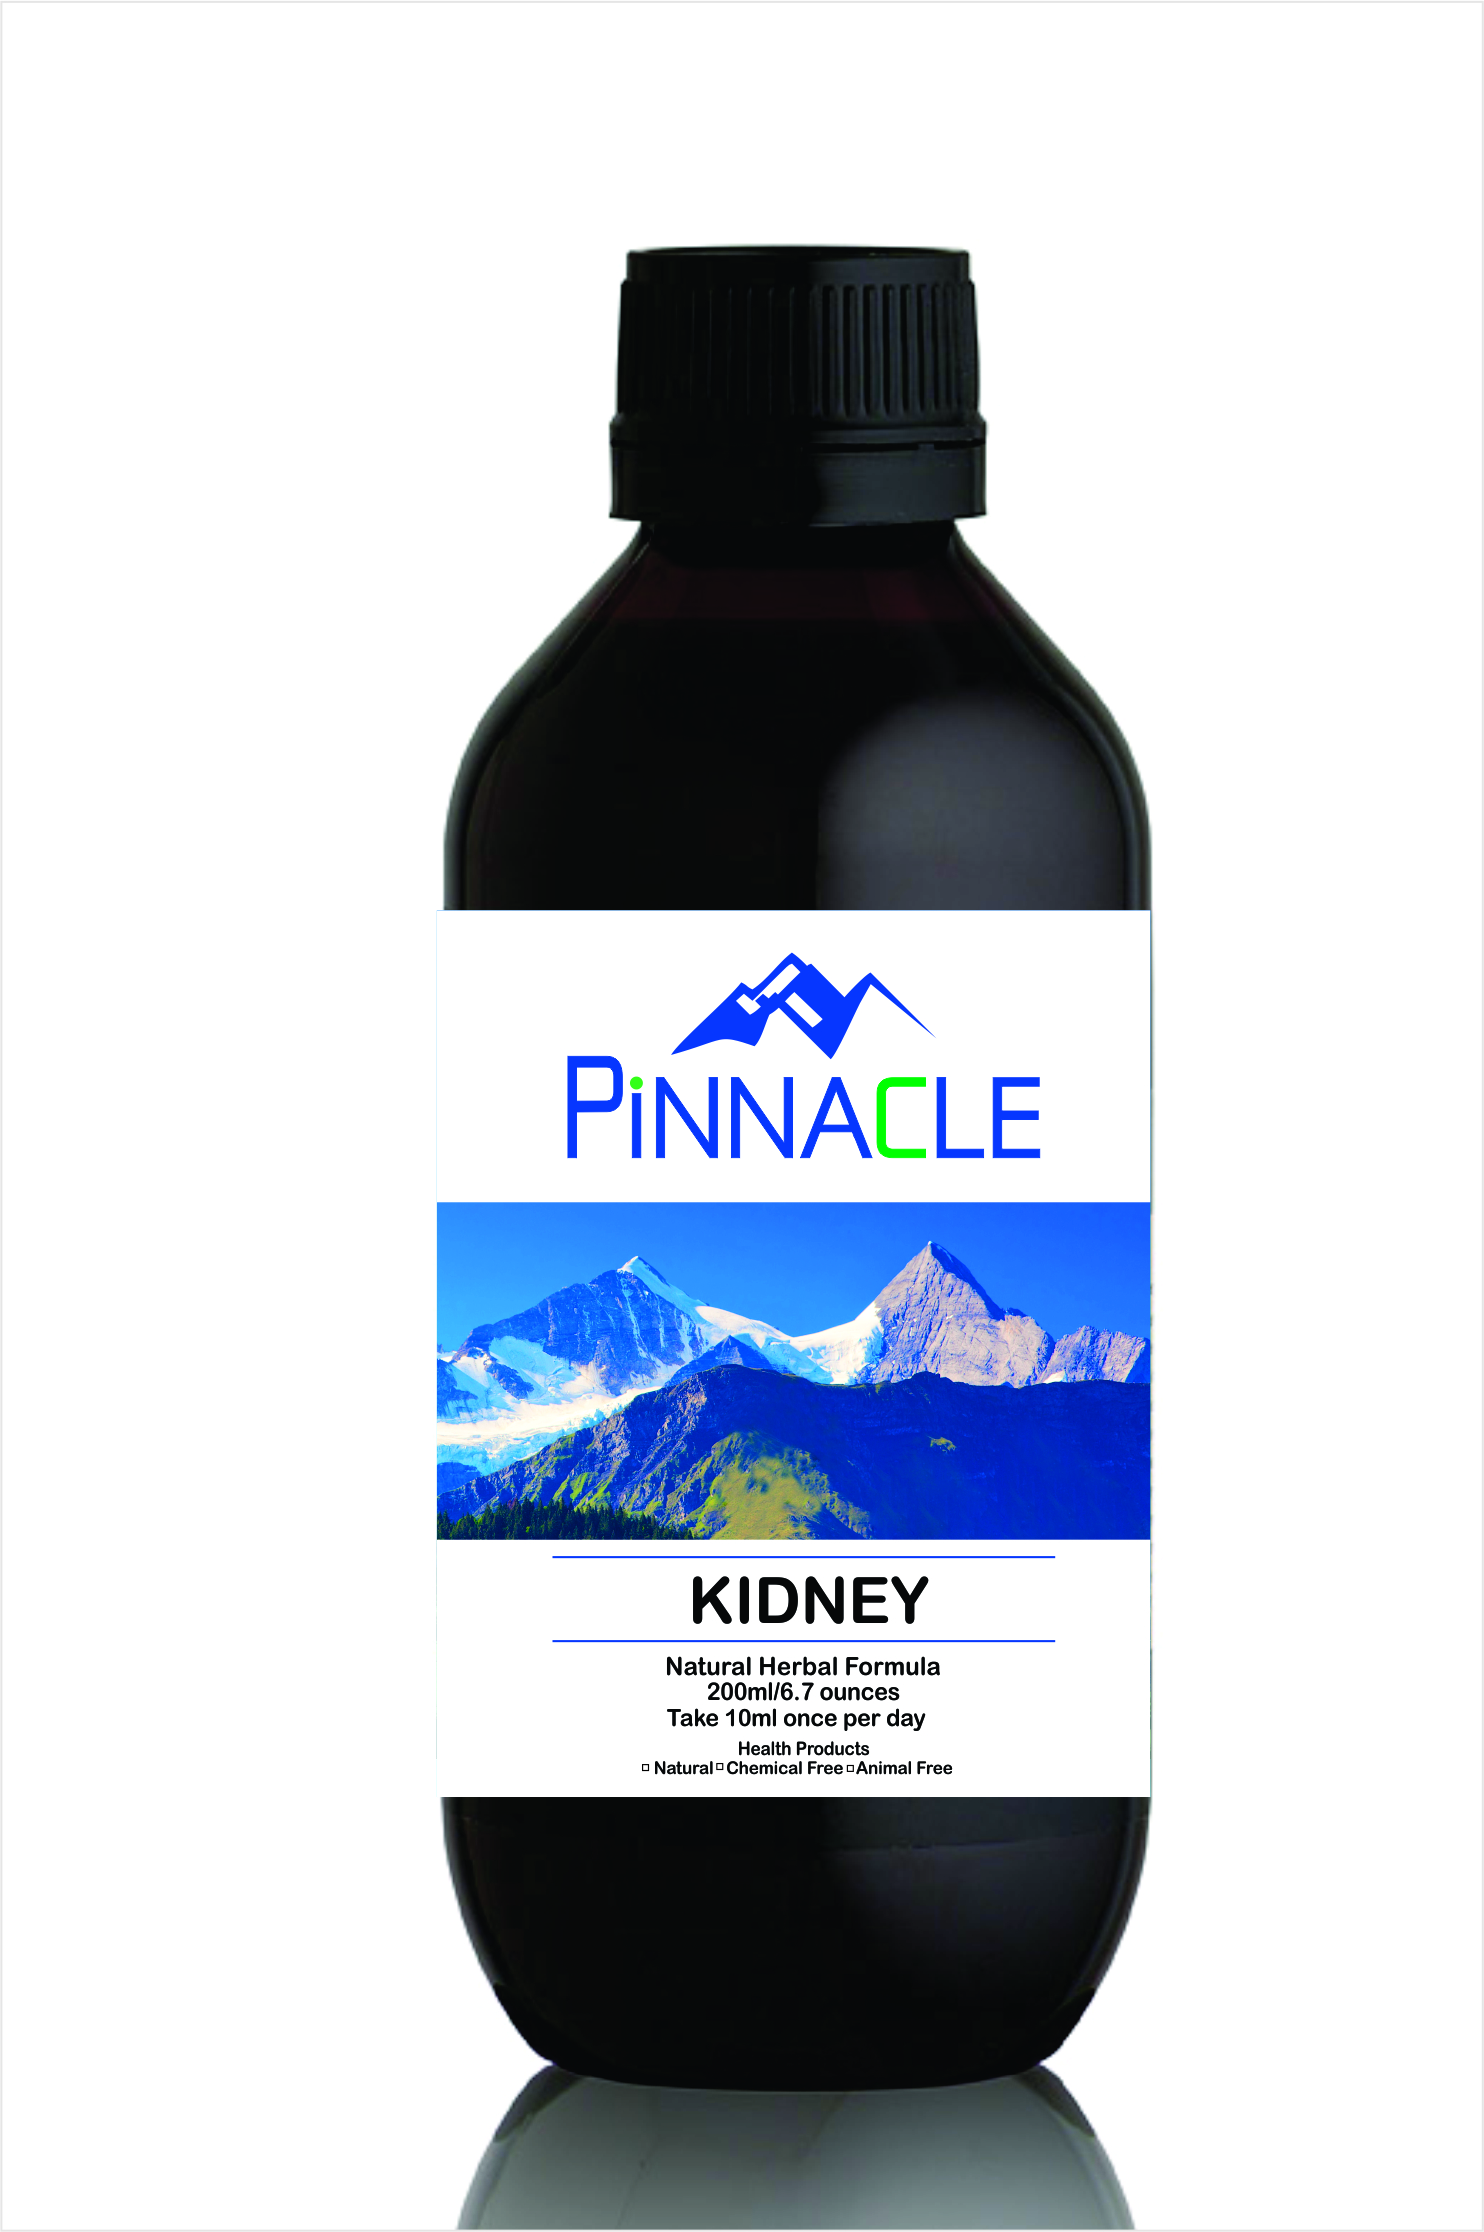 Pinnacle Kidney